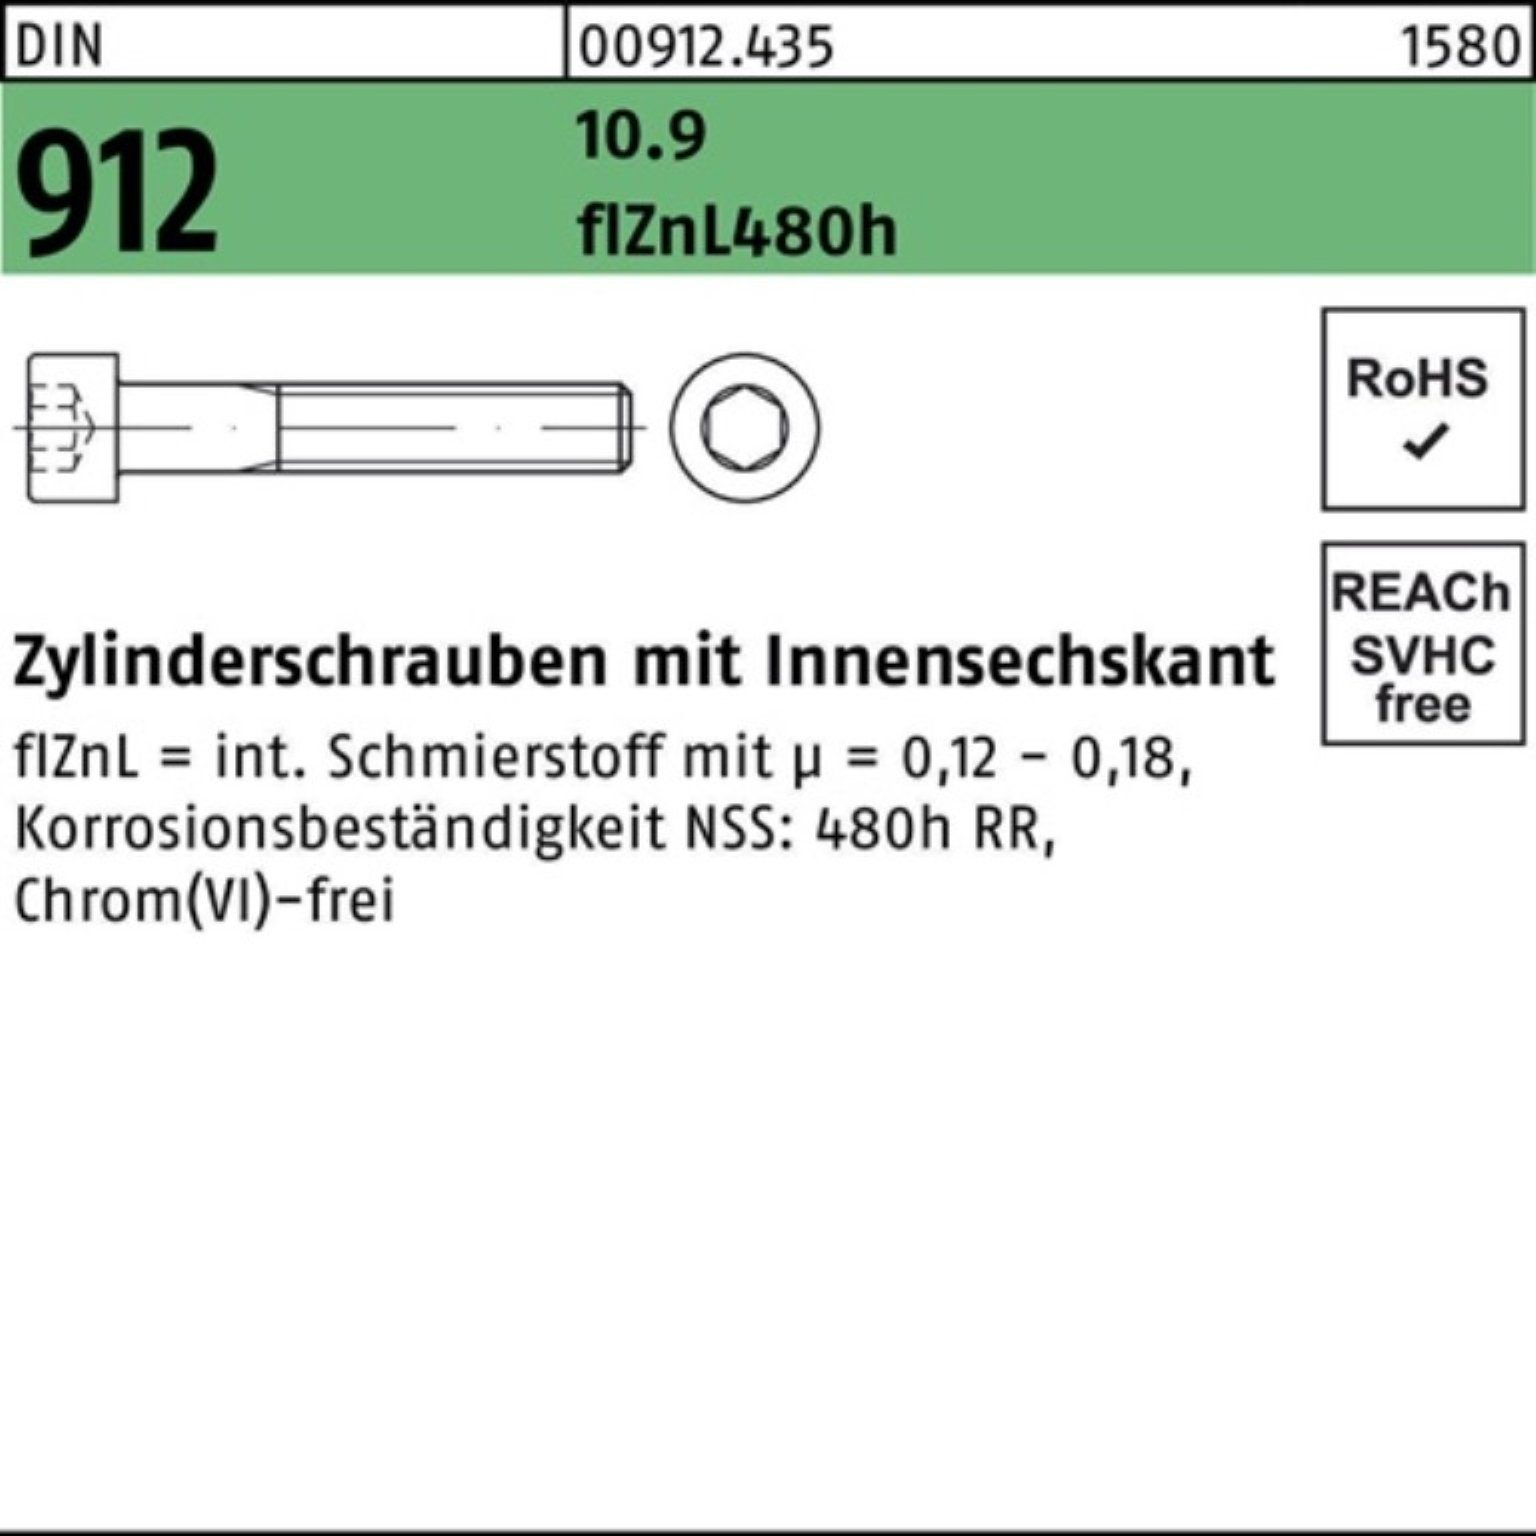 Reyher Zylinderschraube 100er 912 Pack Zylinderschraube DIN flZnL/nc/x/x M16x65 10.9 Innen-6kt